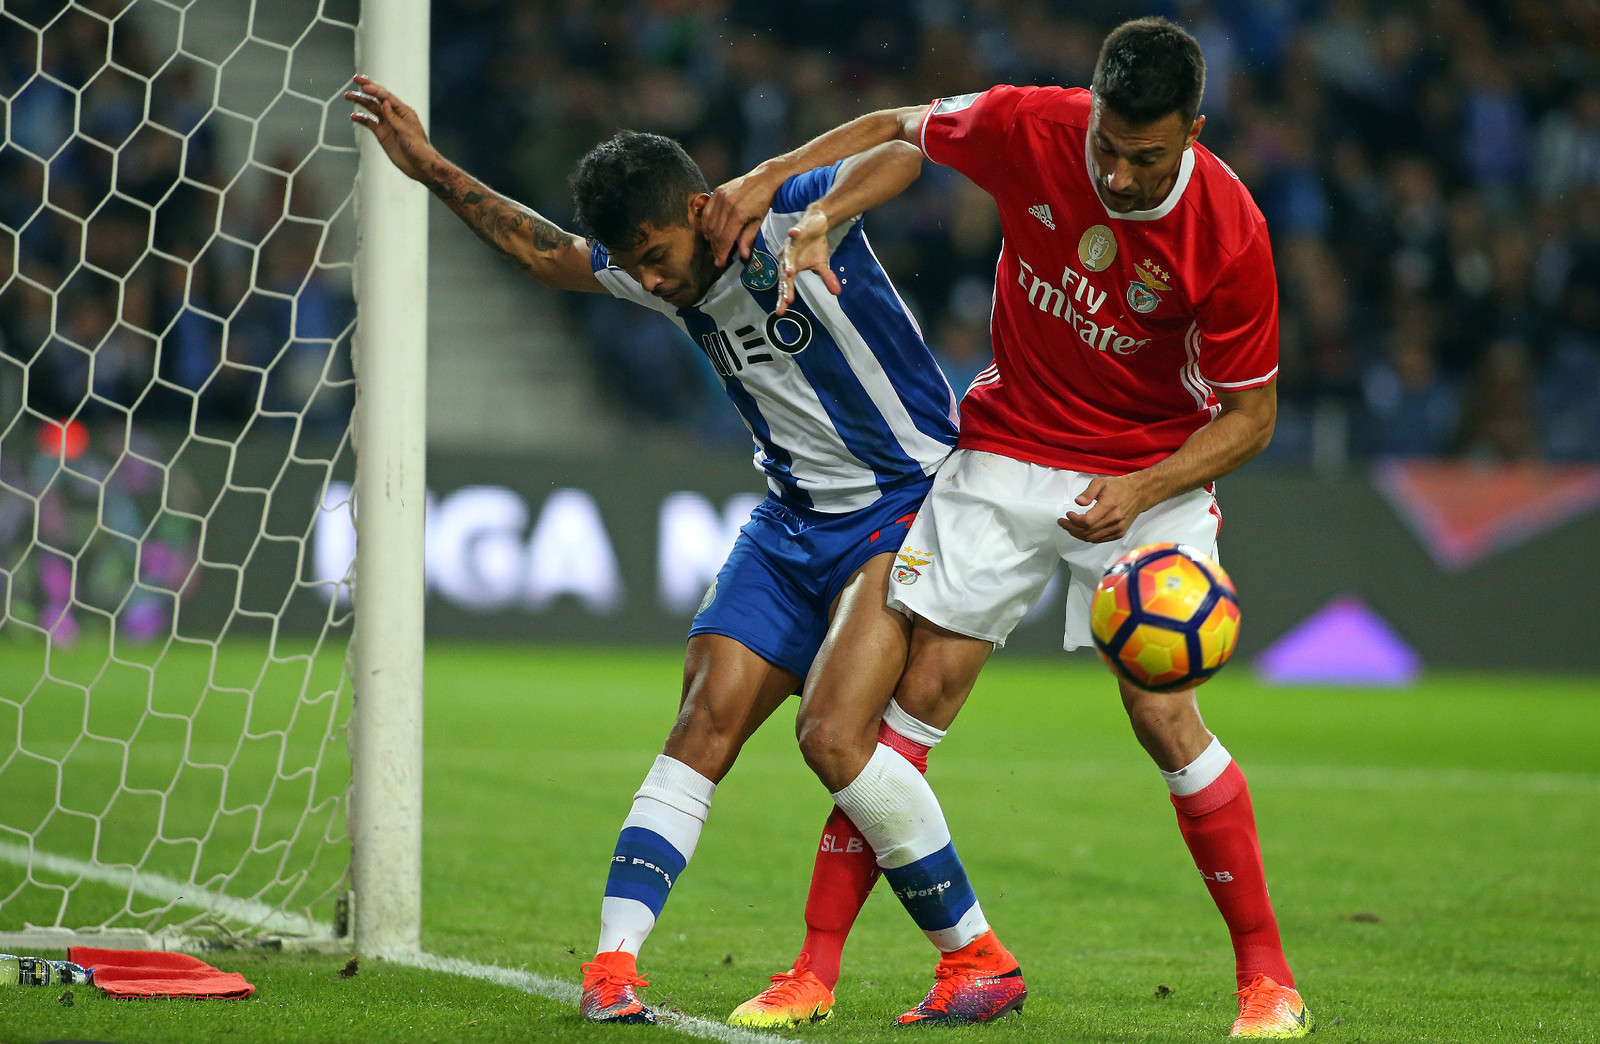 FC Porto vs SL Benfica – Nhận định kèo bóng đá 04h00 16/01/2021 – VĐQG Bồ Đào Nha